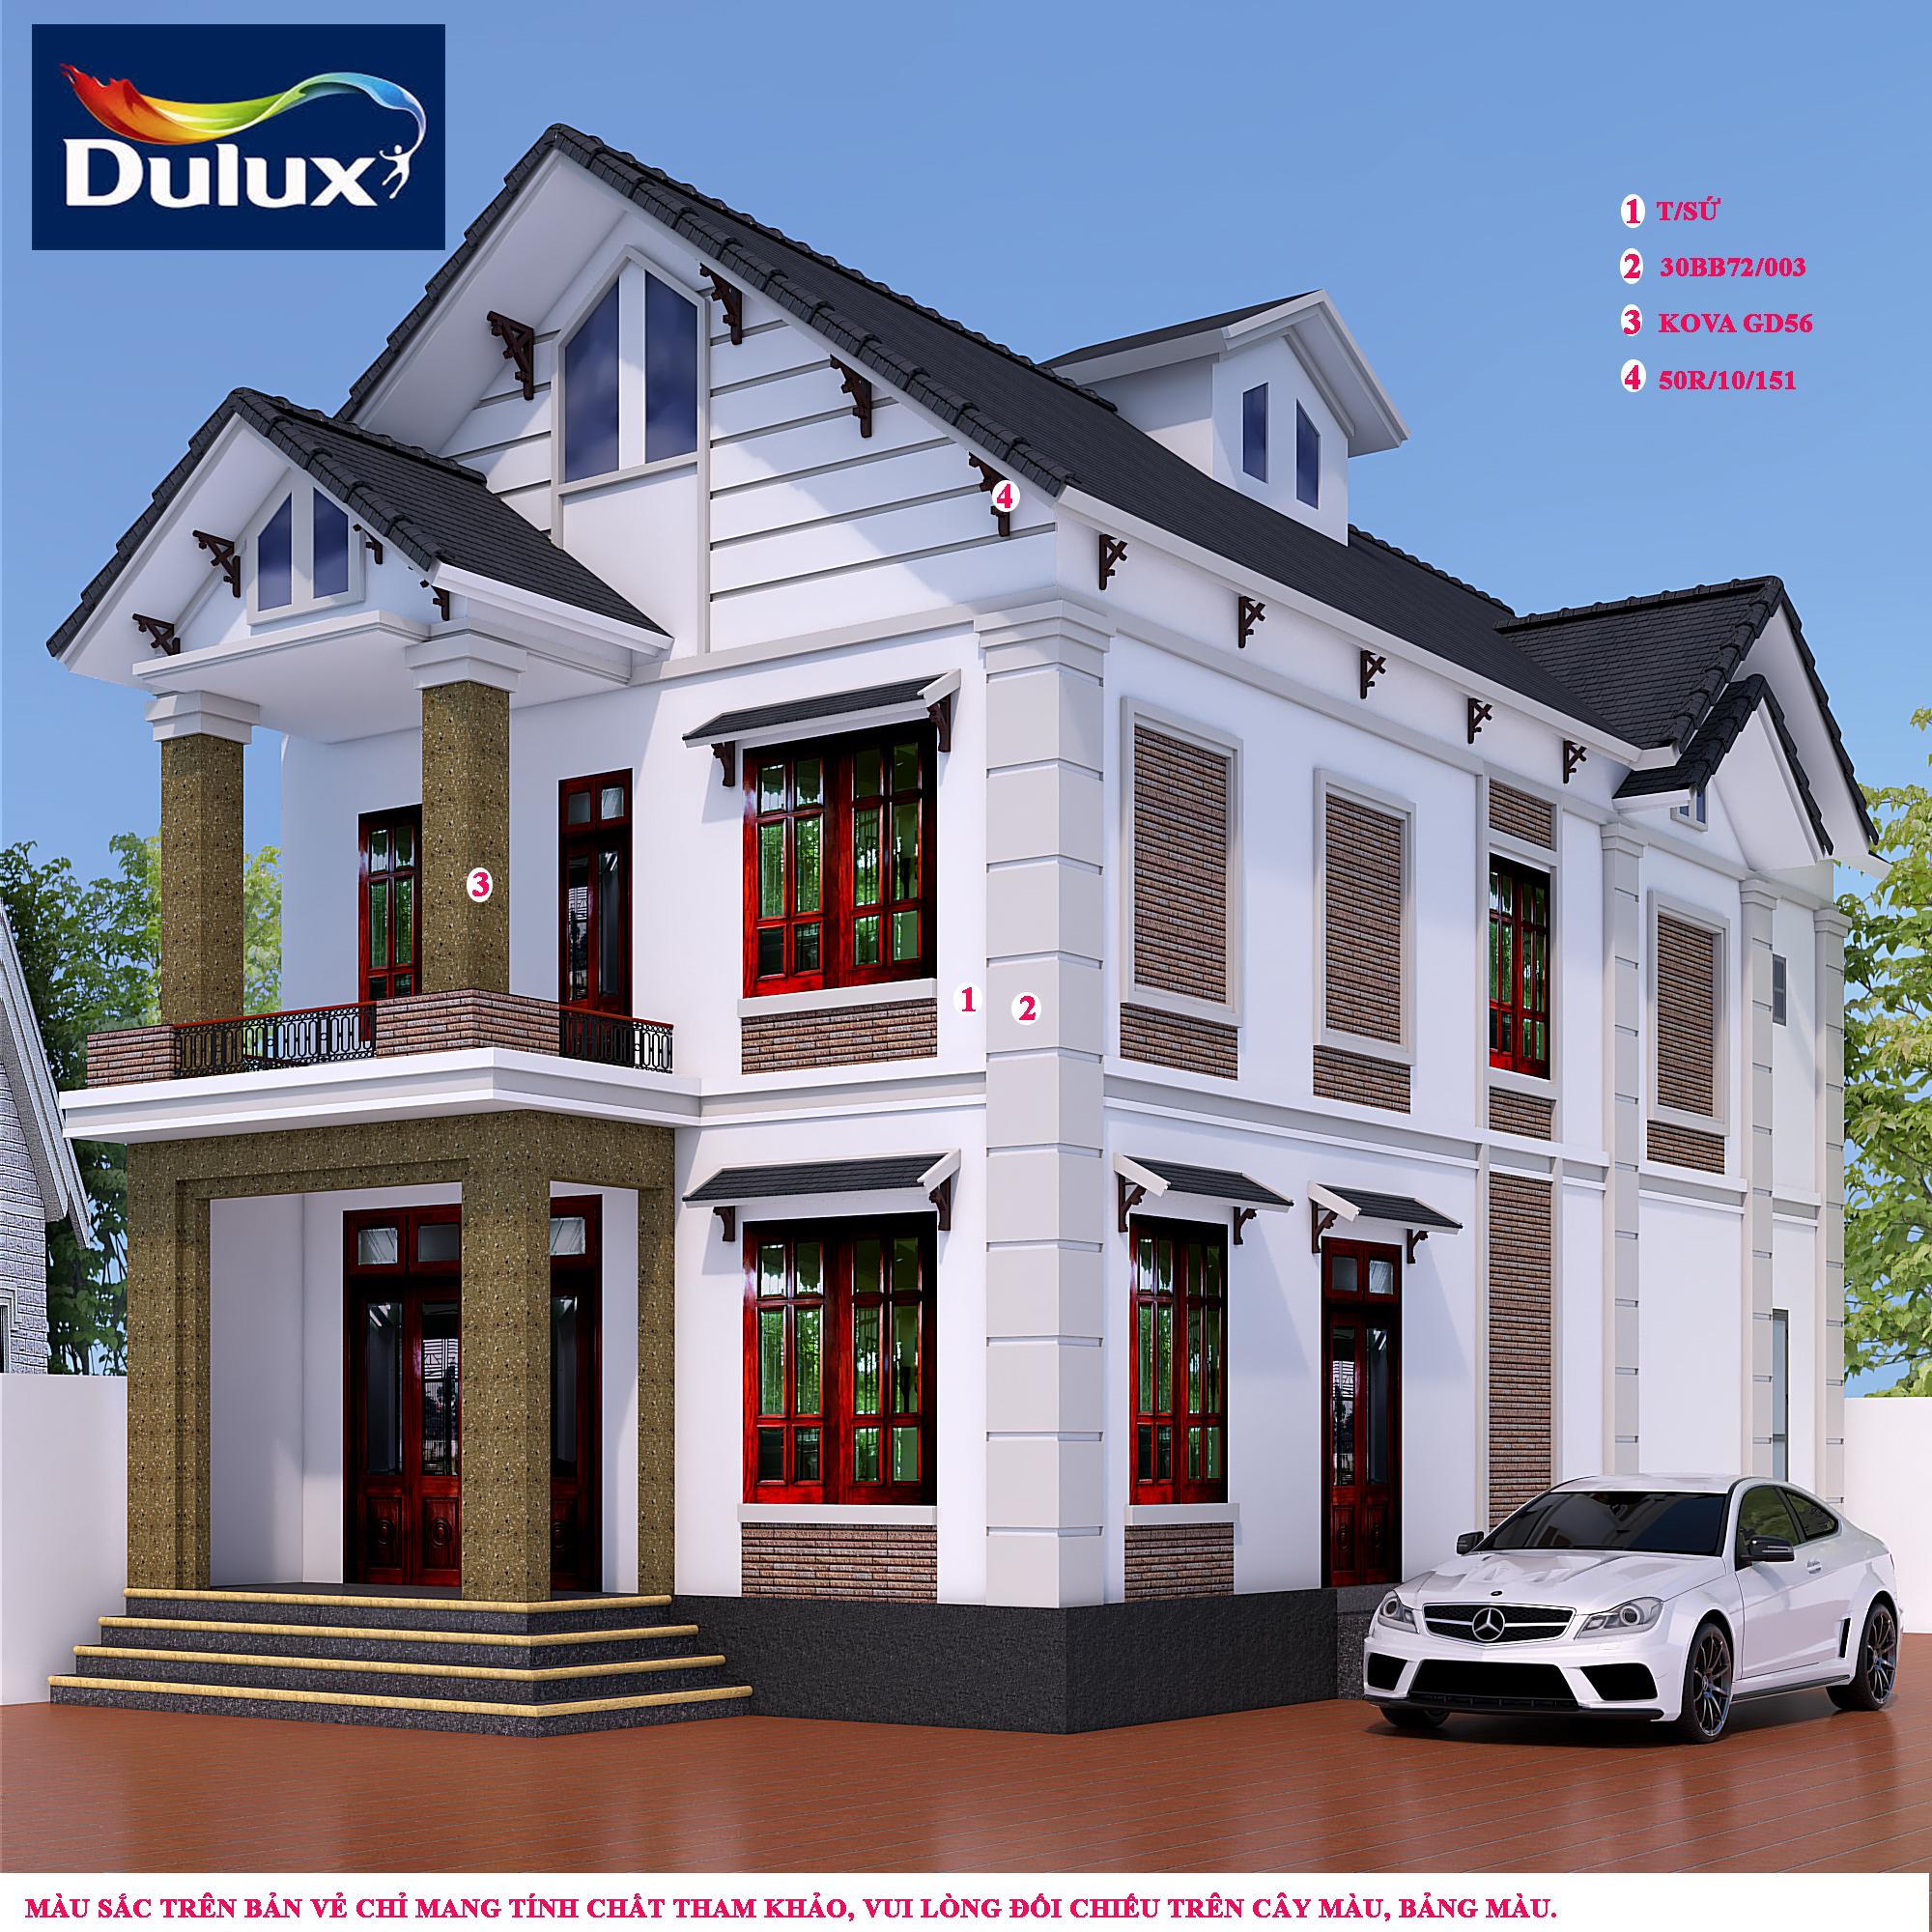 Phối màu sơn Dulux ngoại thất - Với khả năng phối màu ngoại thất tuyệt vời, sơn Dulux sẽ giúp gia tăng giá trị và nâng tầm vẻ đẹp thẩm mỹ cho ngôi nhà của bạn. Hãy khám phá những bộ sưu tập màu sắc và tạo ra vẻ đẹp riêng cho ngôi nhà của bạn!